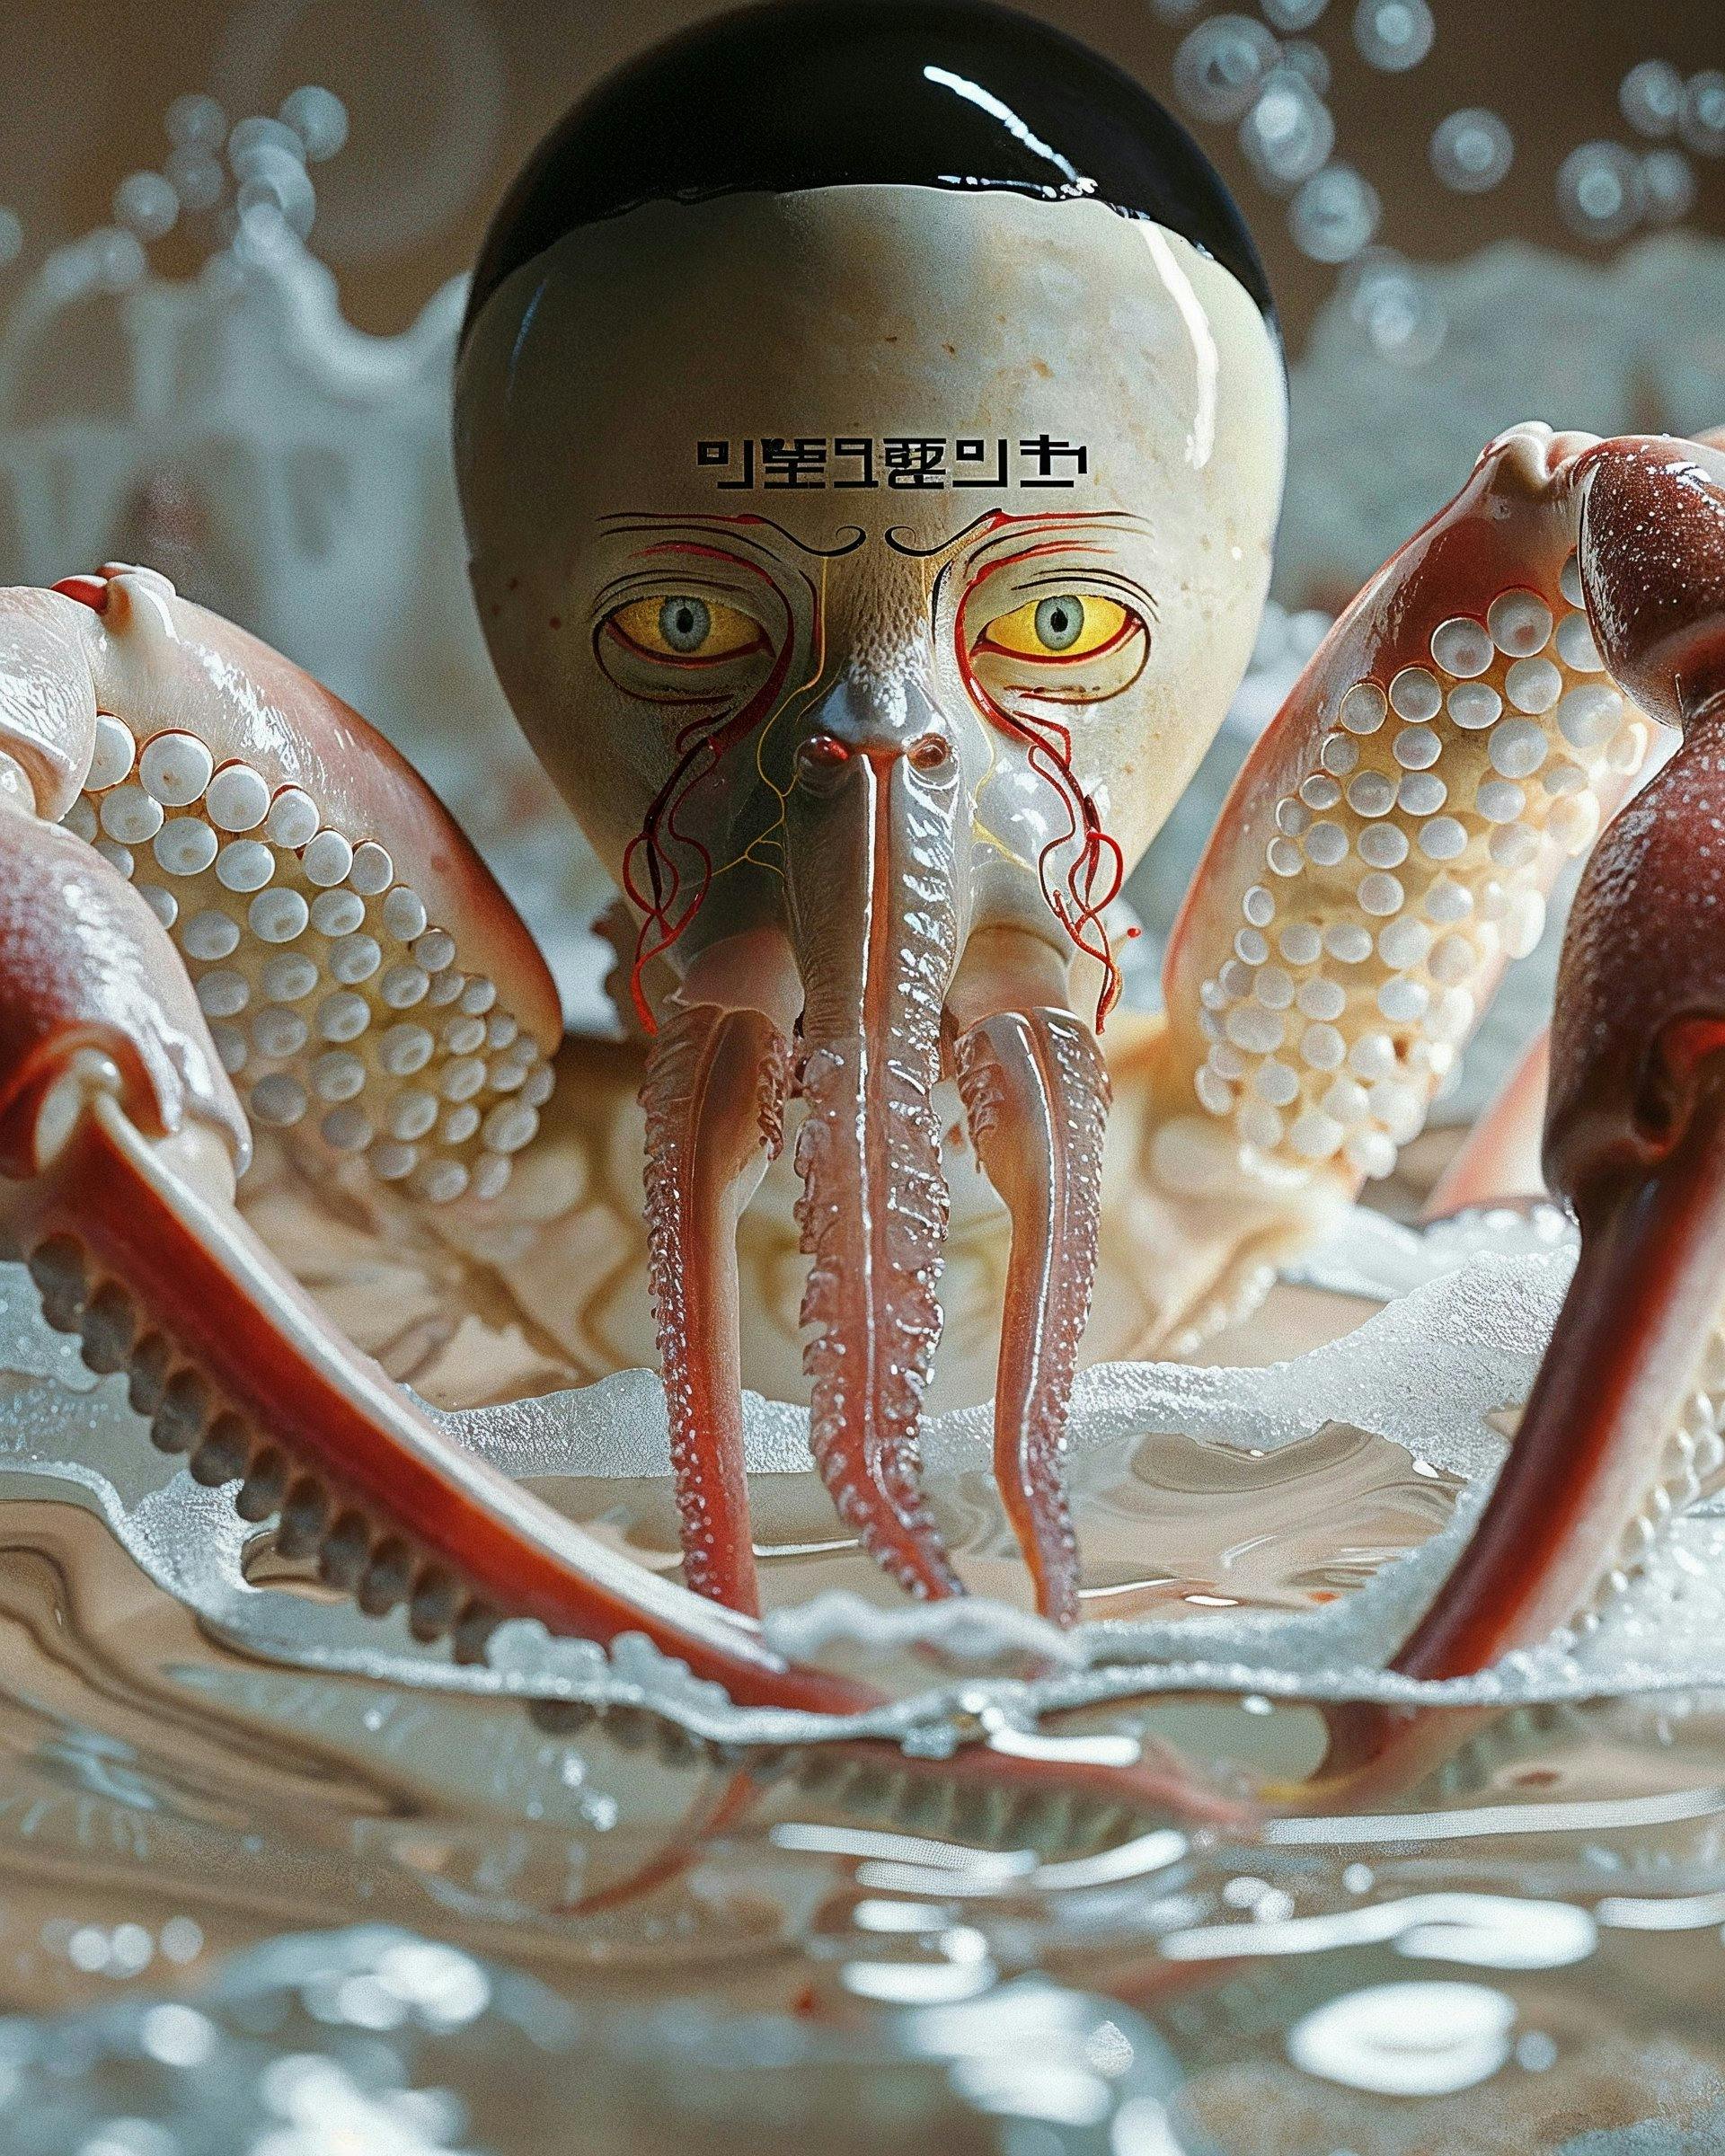 Sculpture of a crab creature